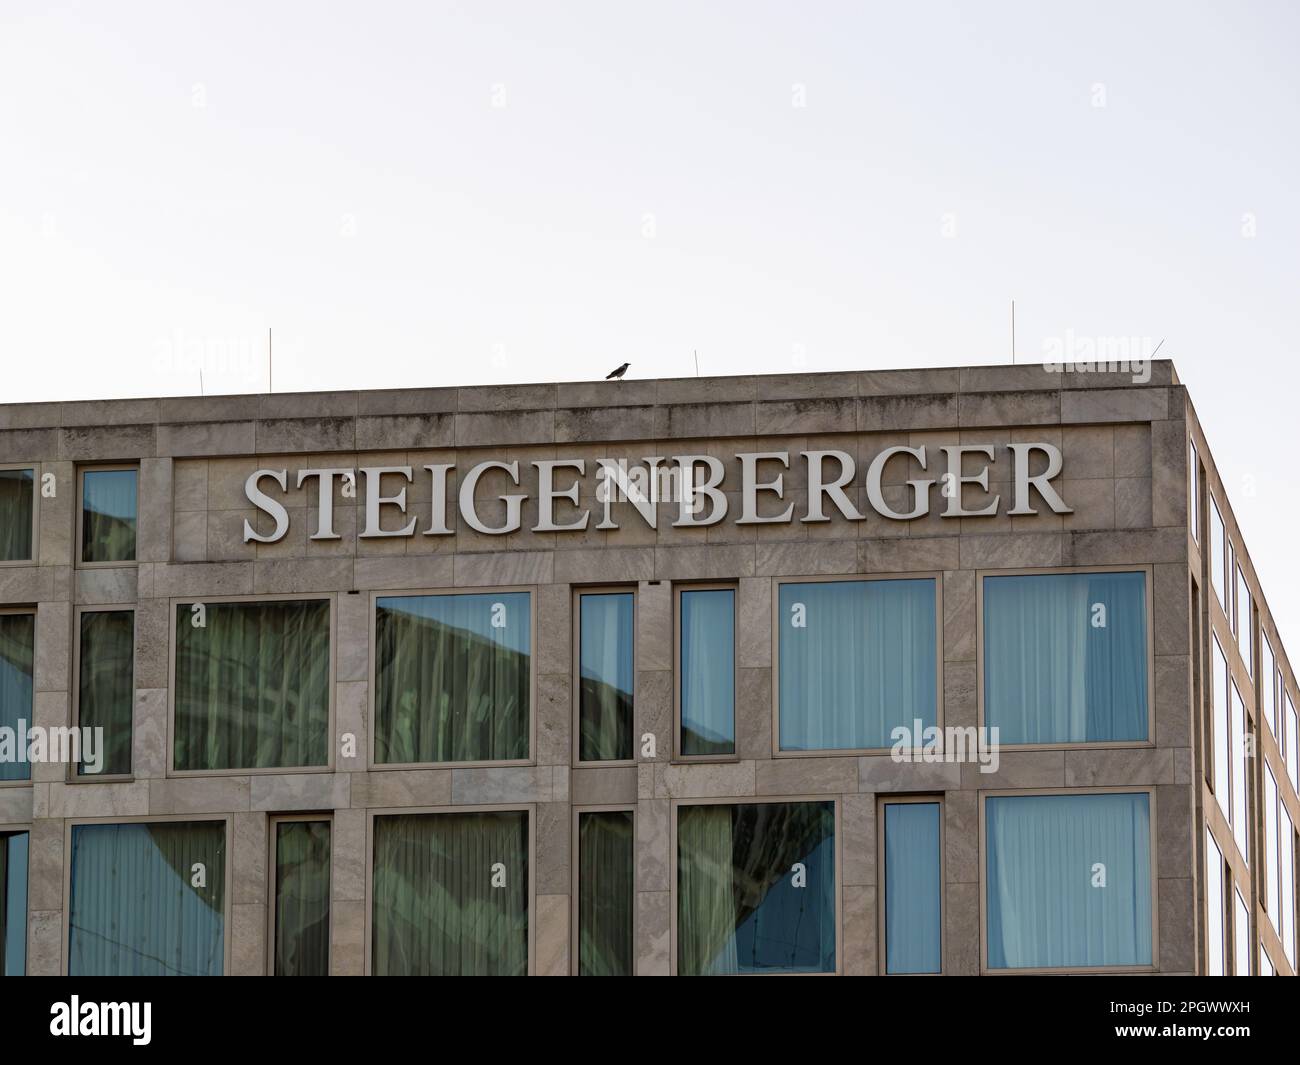 Steigenberger hôtel de luxe dans la ville. Logo sur la façade. Extérieur du bâtiment dans une architecture moderne. Industrie du voyage et du tourisme. Banque D'Images